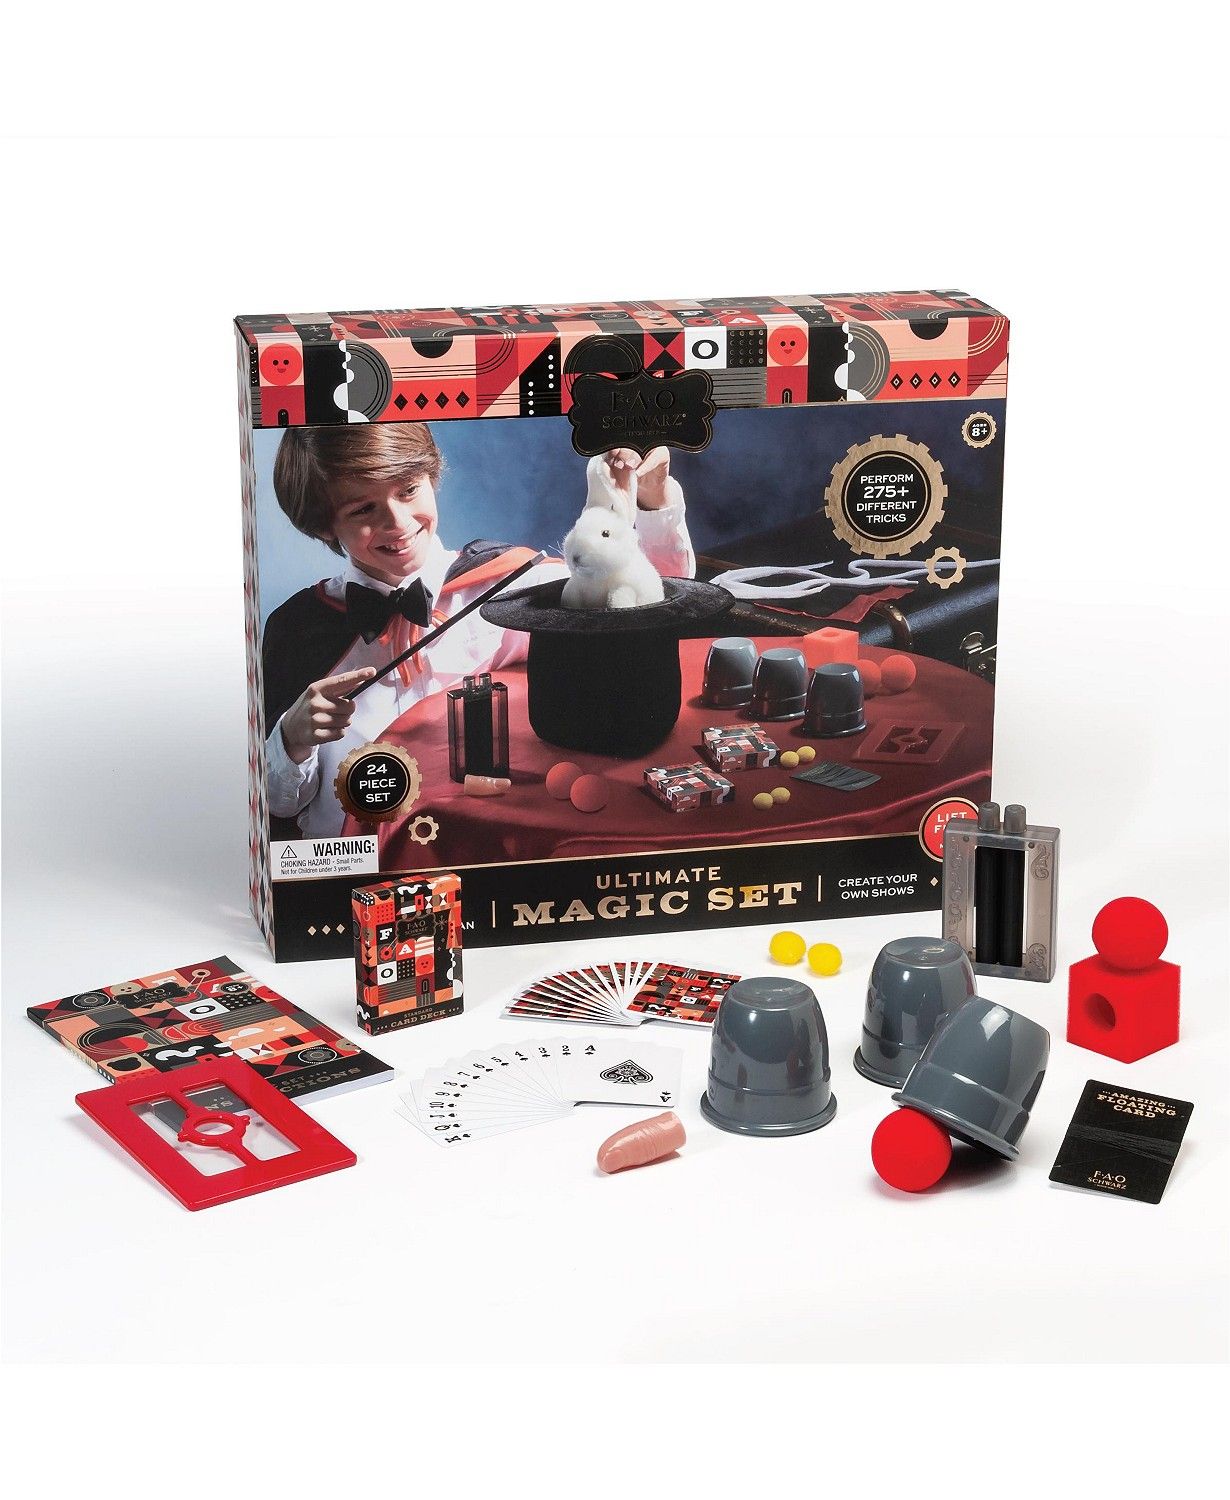 FAO Schwarz Toy Kids Magic Set 24pc & Reviews - Macy's | Macys (US)